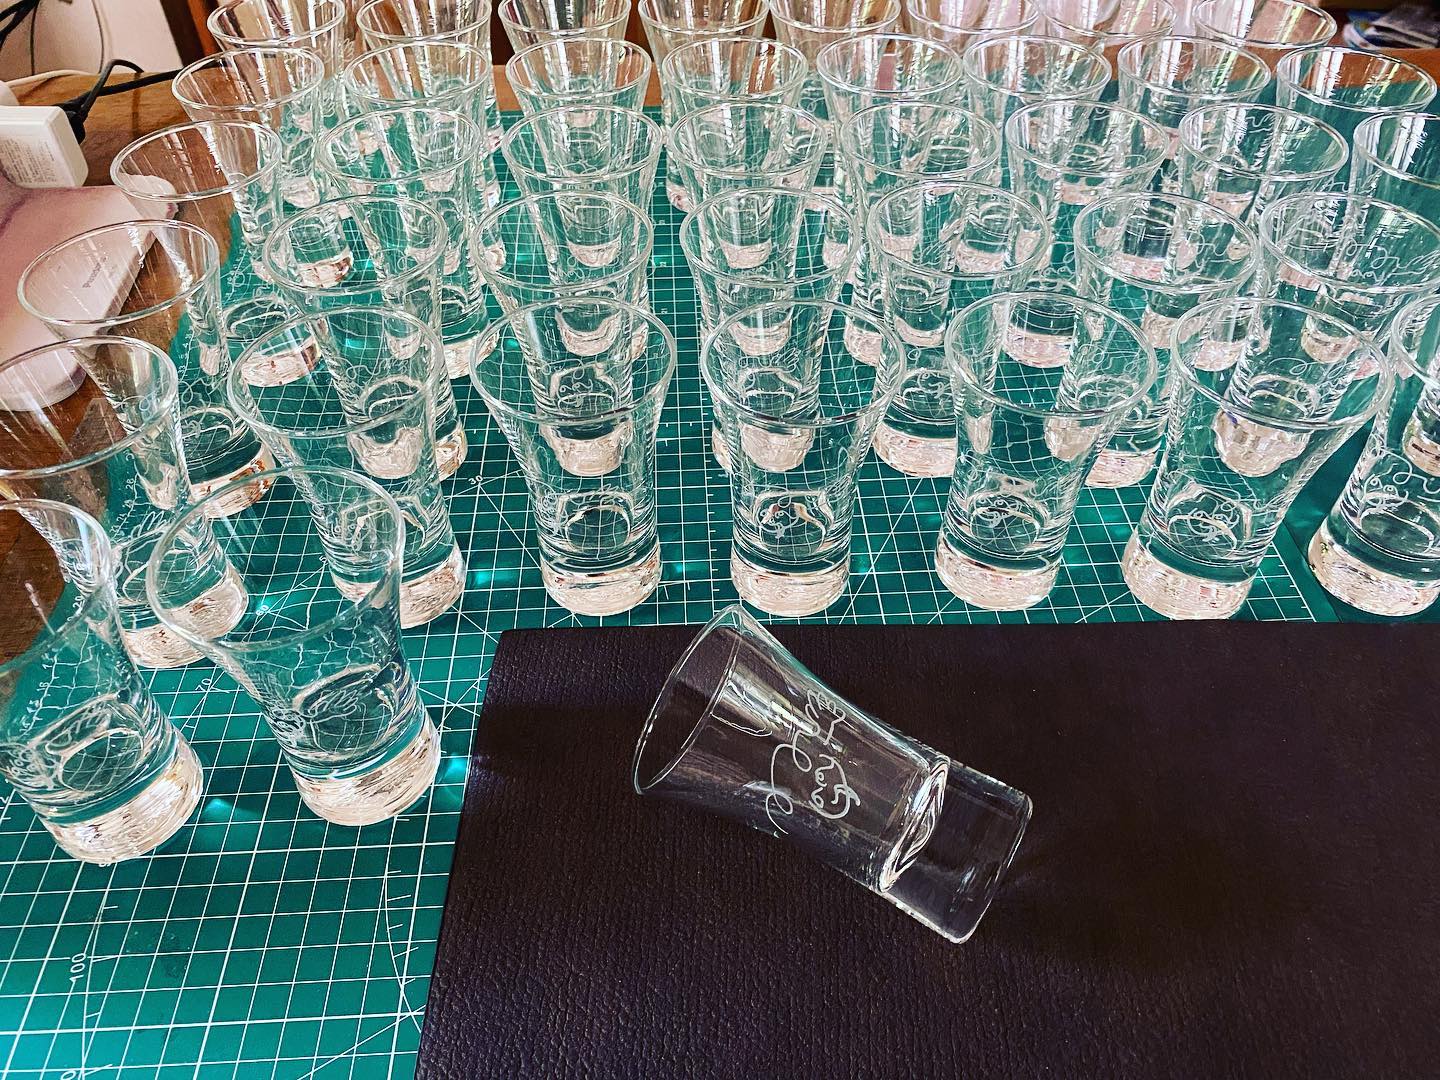 日本酒グラス夏は冷酒が美味しいですね。#名入れグラス#ロゴ入りグラス#ロゴ入り日本酒グラス